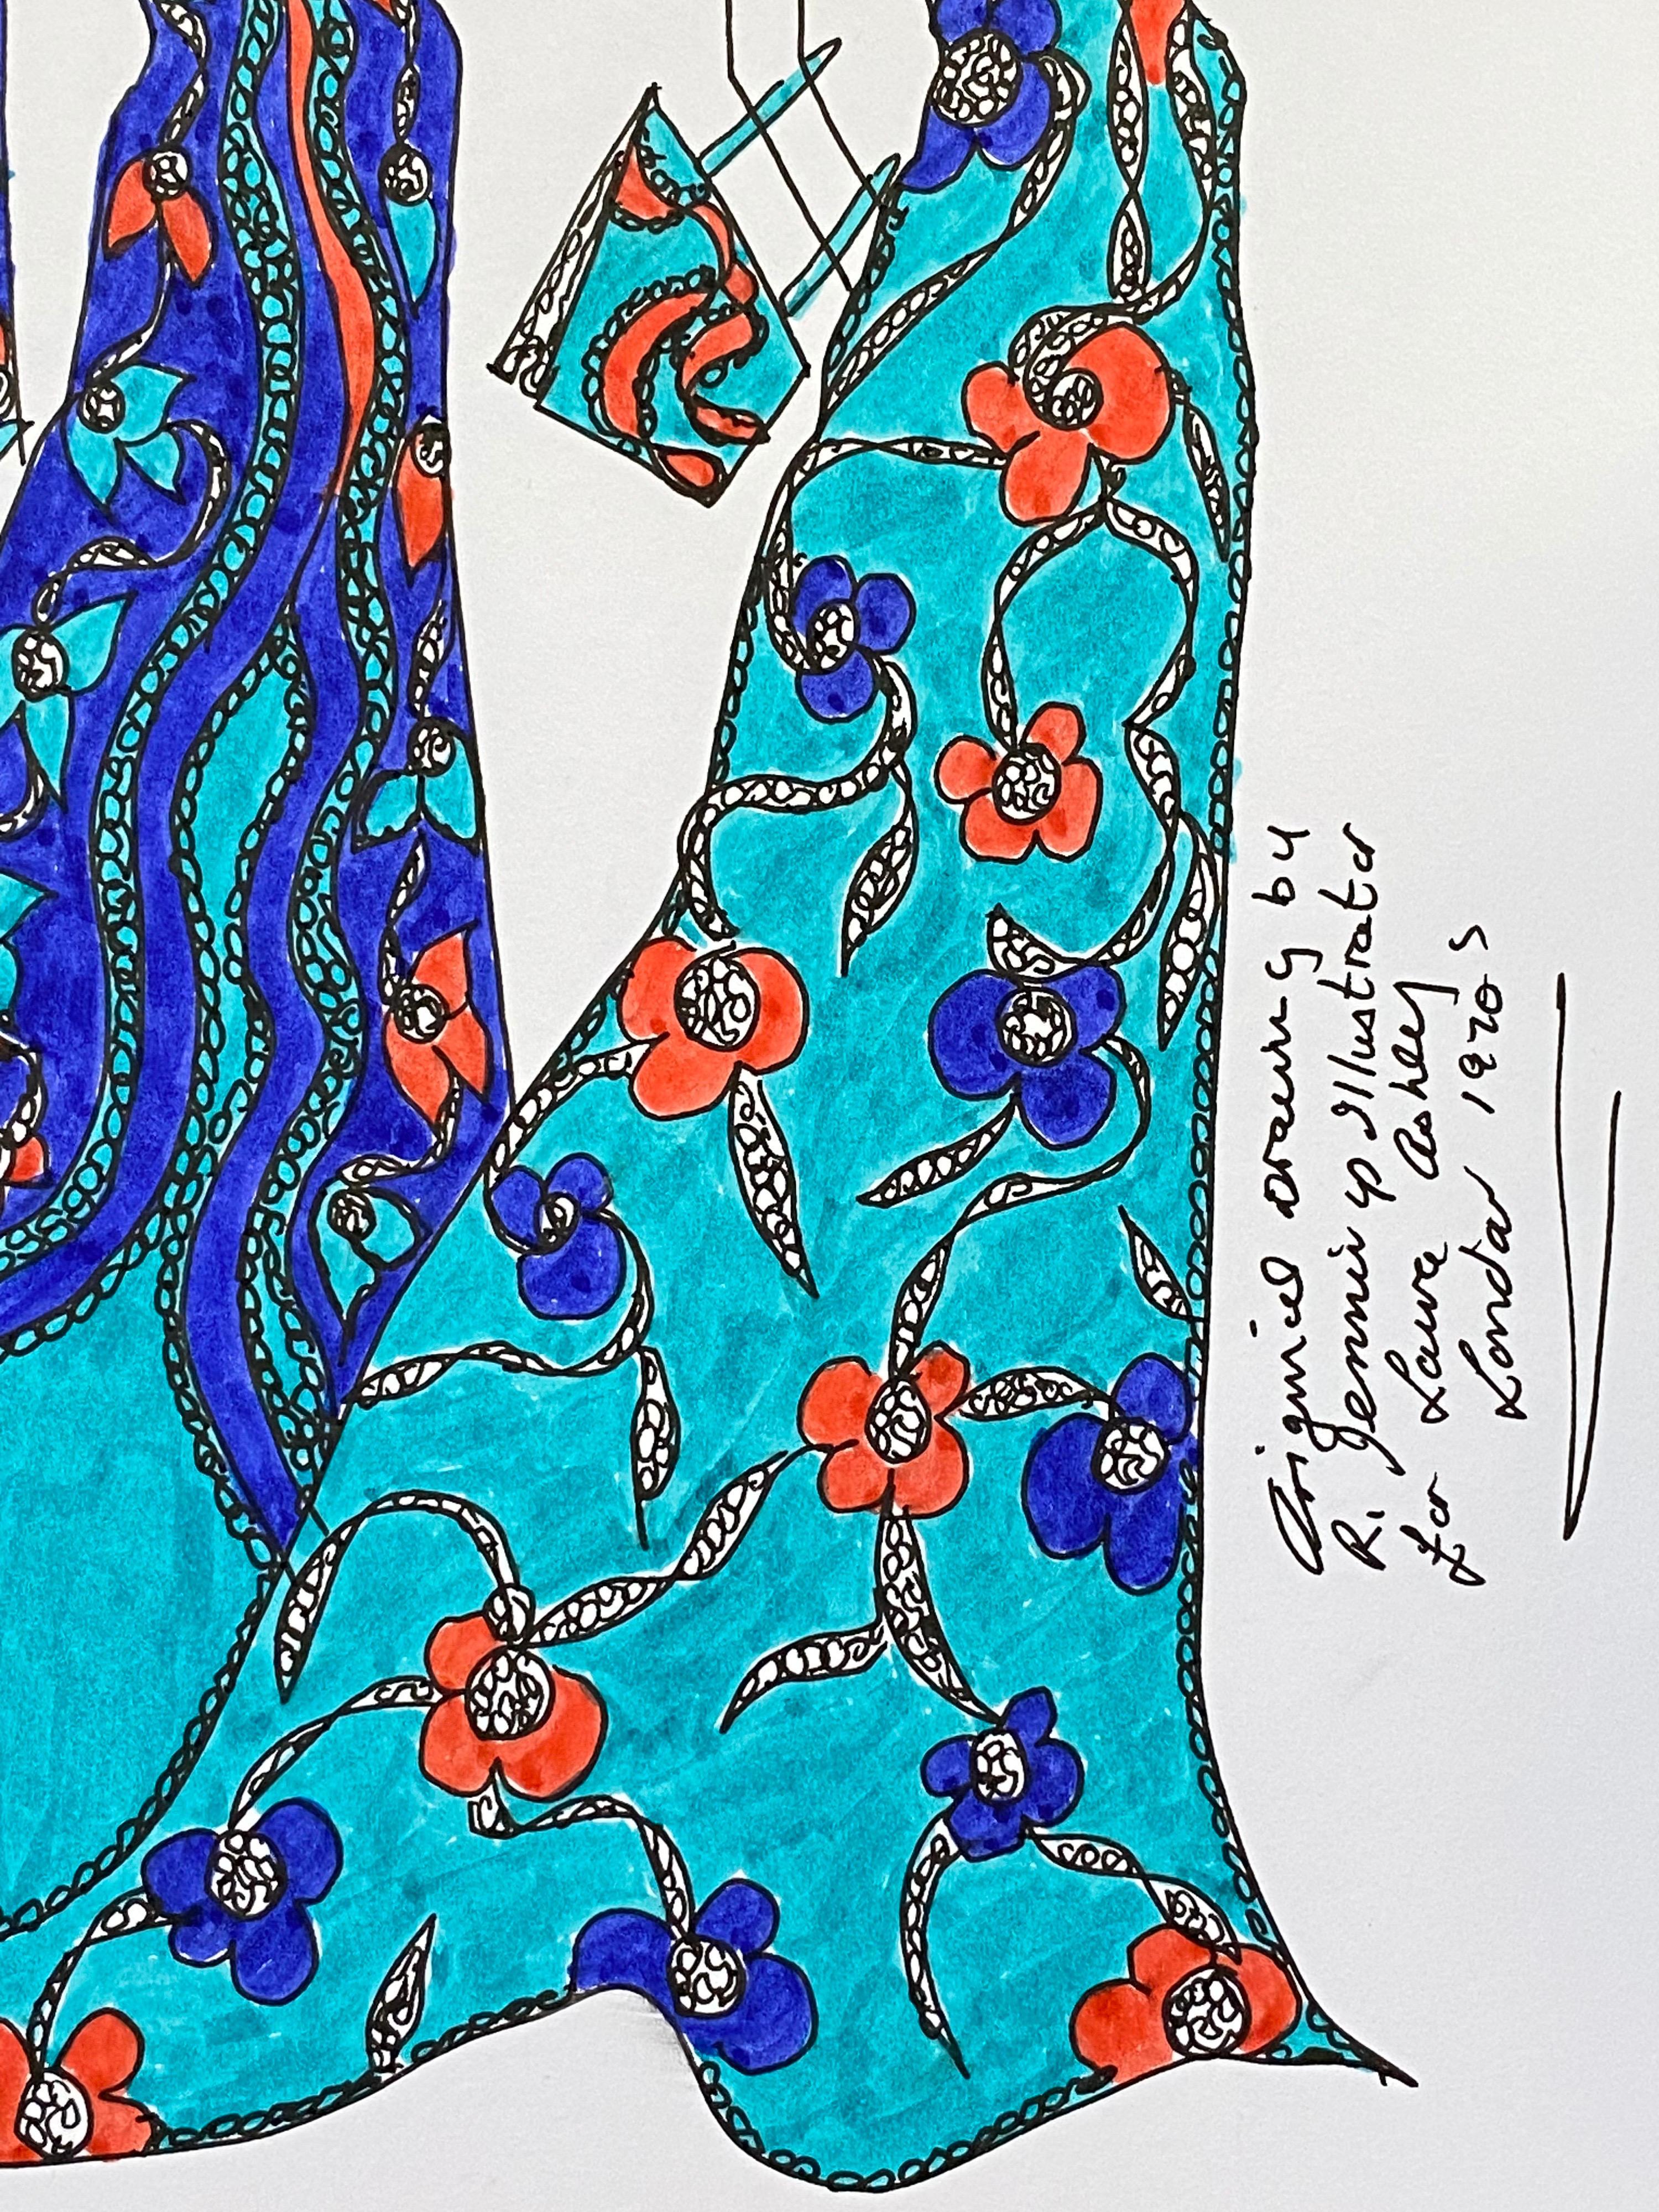 Originelle Illustration eines Modedesigns
von Roz Jennings, Britin
aquarell und Tinte auf Karton, ungerahmt
größe: 12 x 8,25 Zoll
zustand: sehr gut

Ein wunderschönes, farbenfrohes und charaktervolles Original-Kunstwerk der britischen